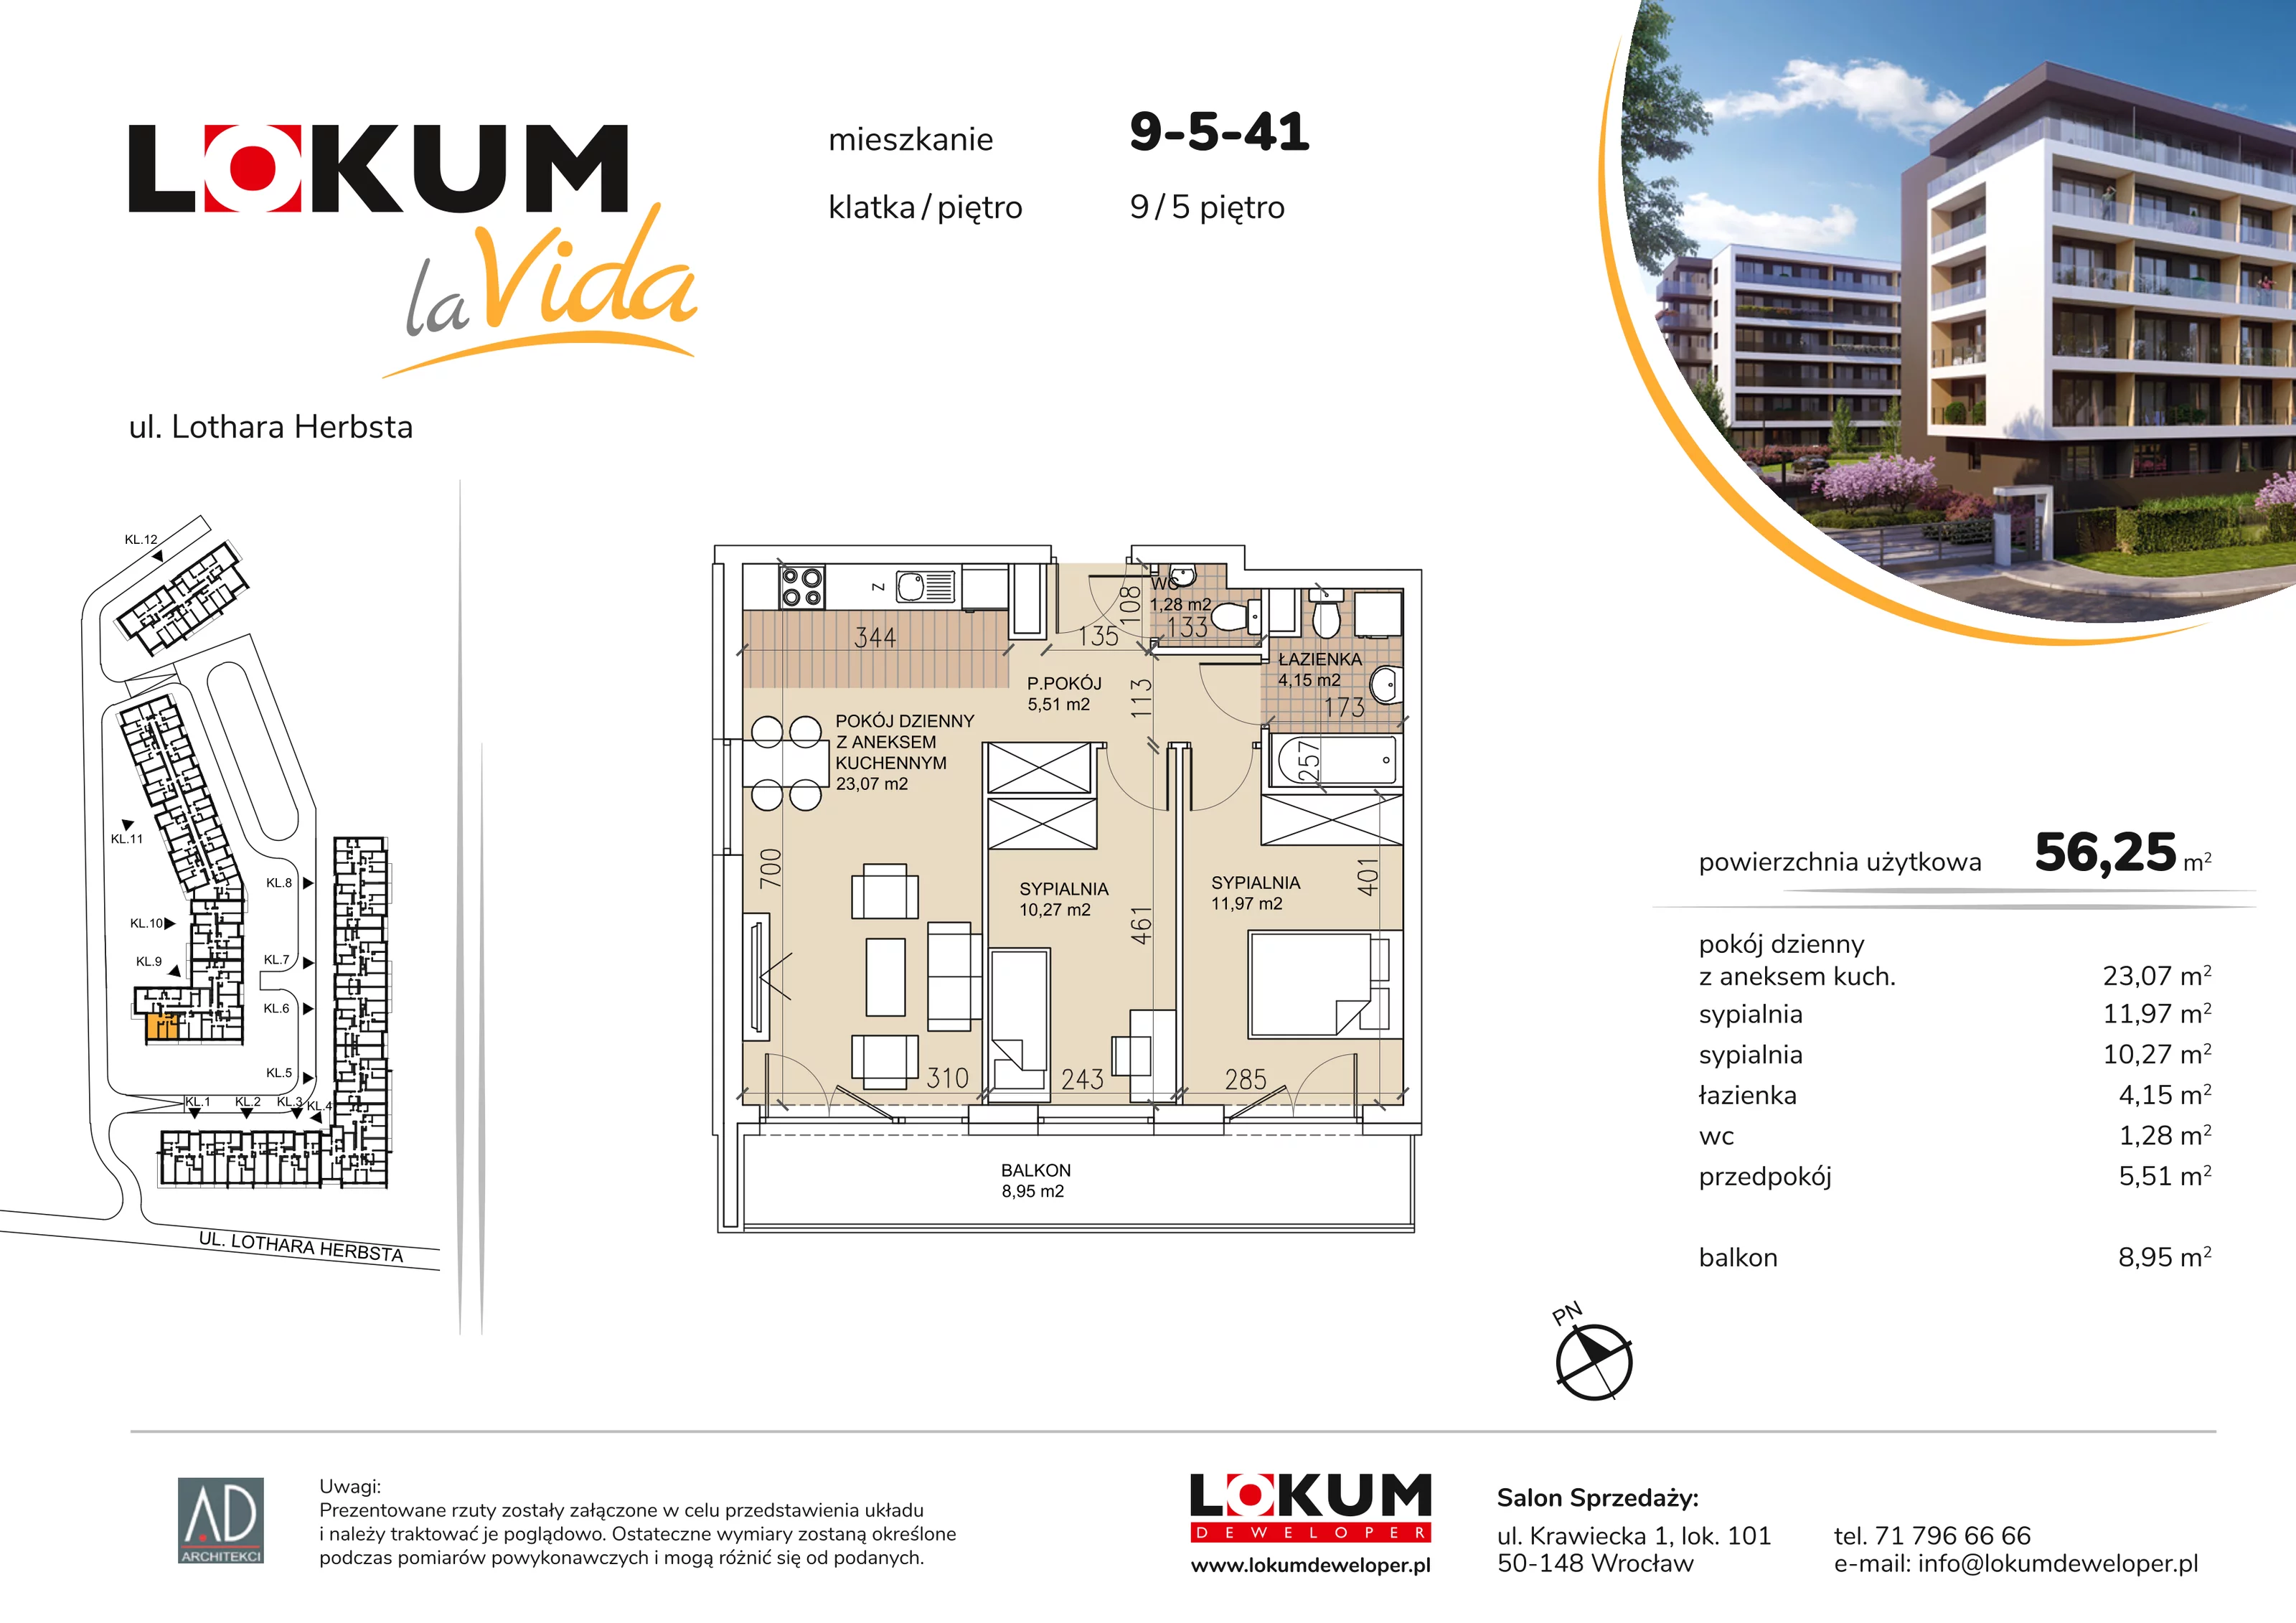 Mieszkanie 56,25 m², piętro 5, oferta nr 9-5-41, Lokum la Vida, Wrocław, Sołtysowice, ul. Lothara Herbsta